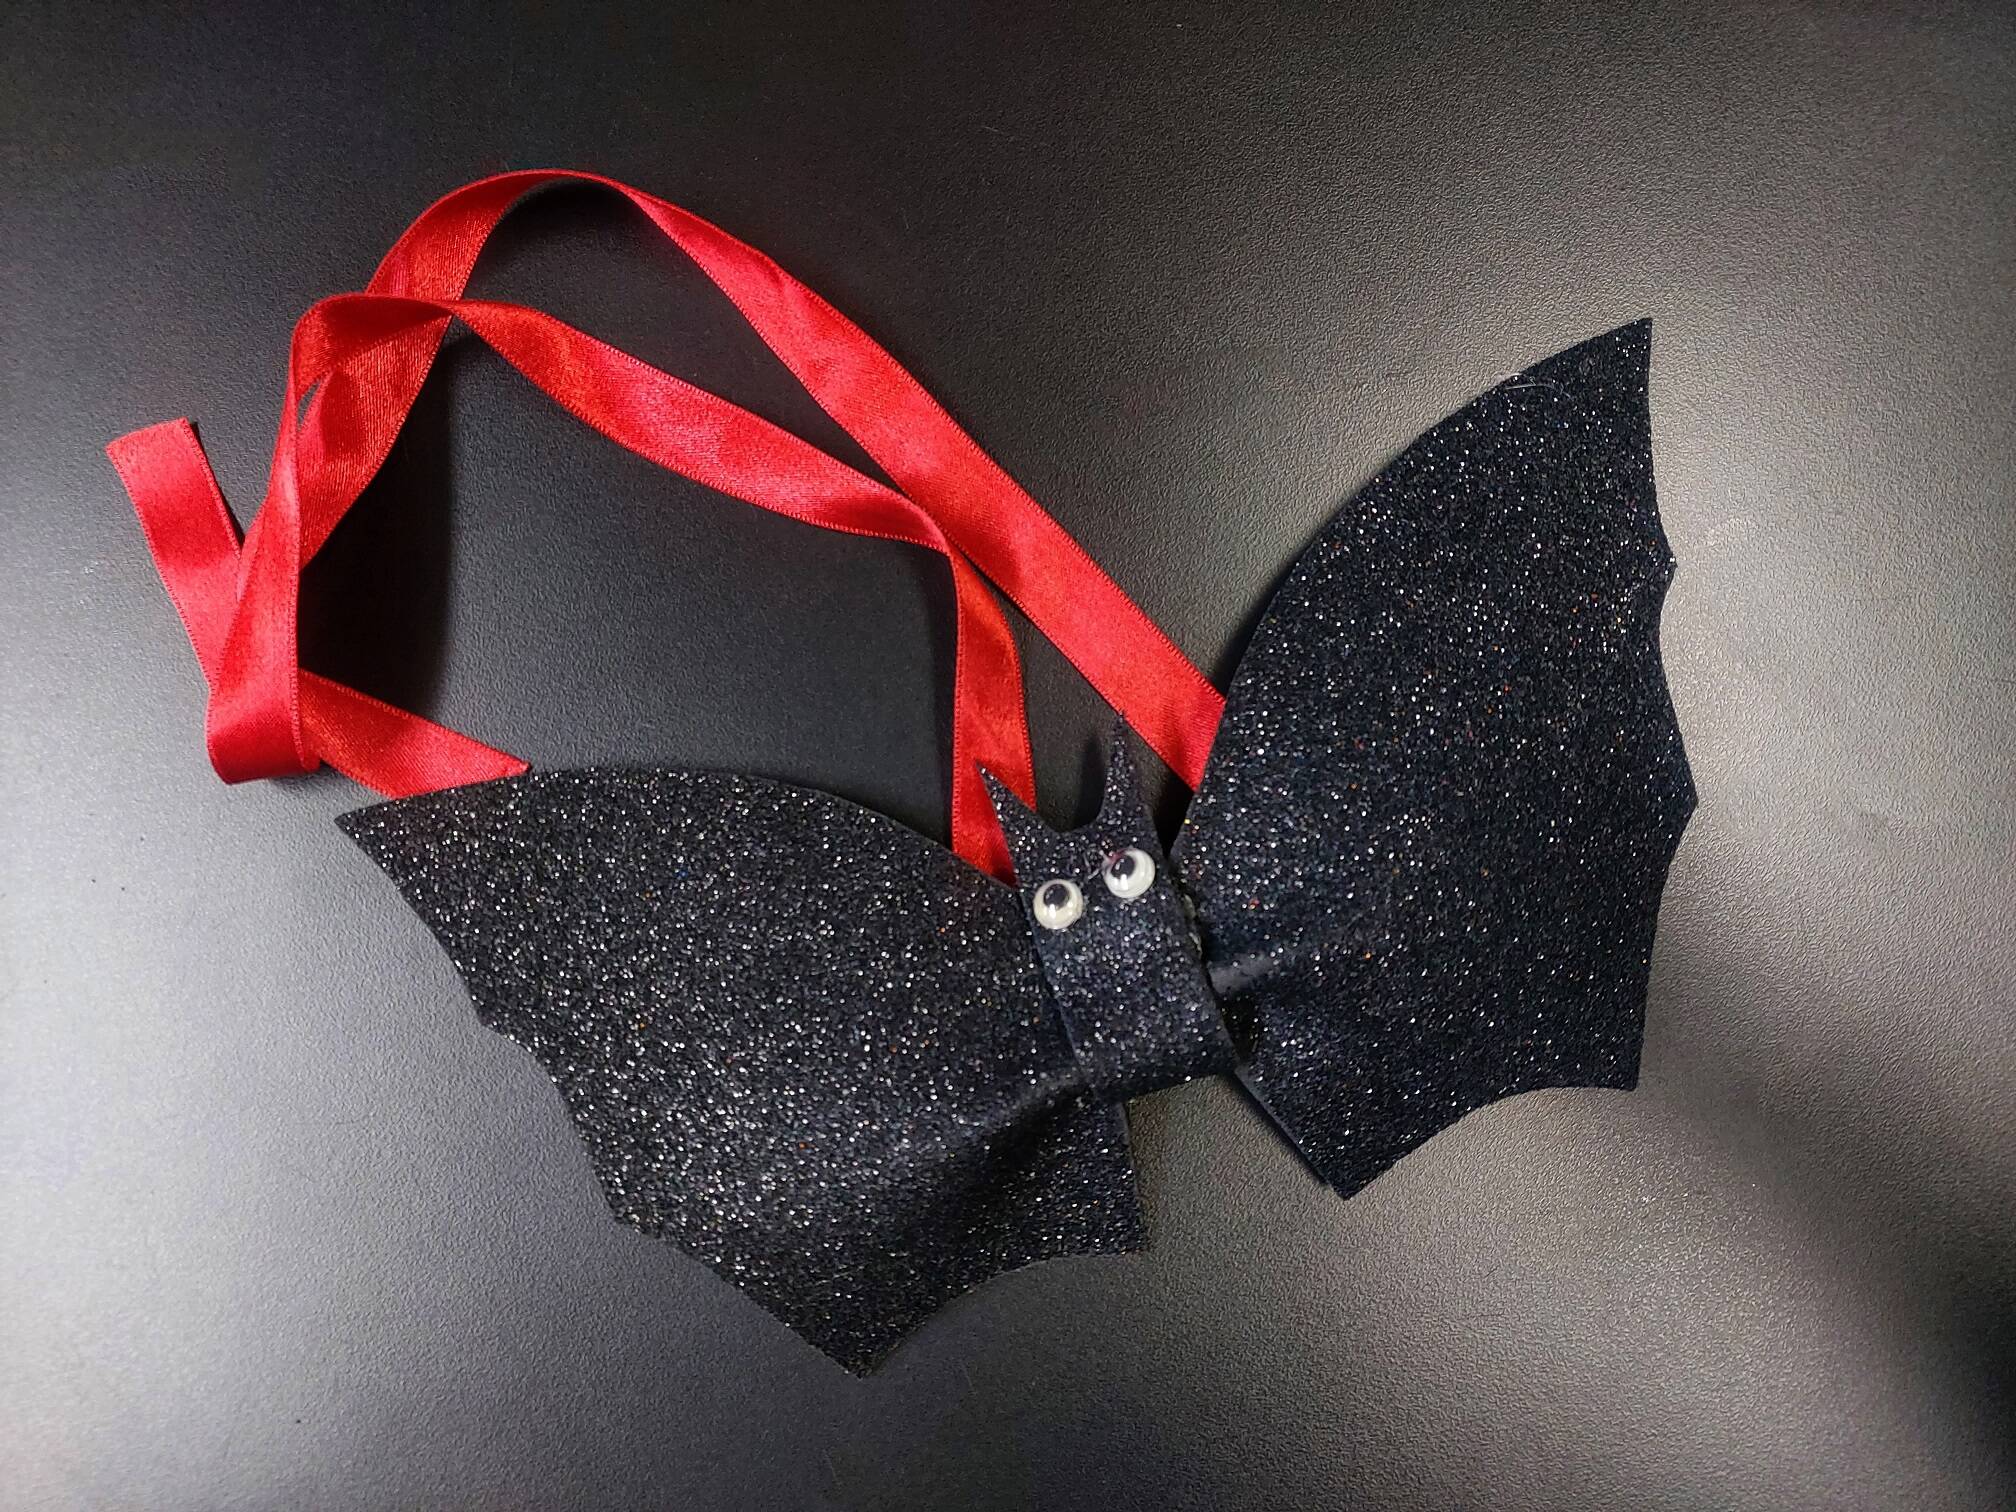 Gravatinha de Morcego frente. Foto: Divulgação/Moda Sigbol 